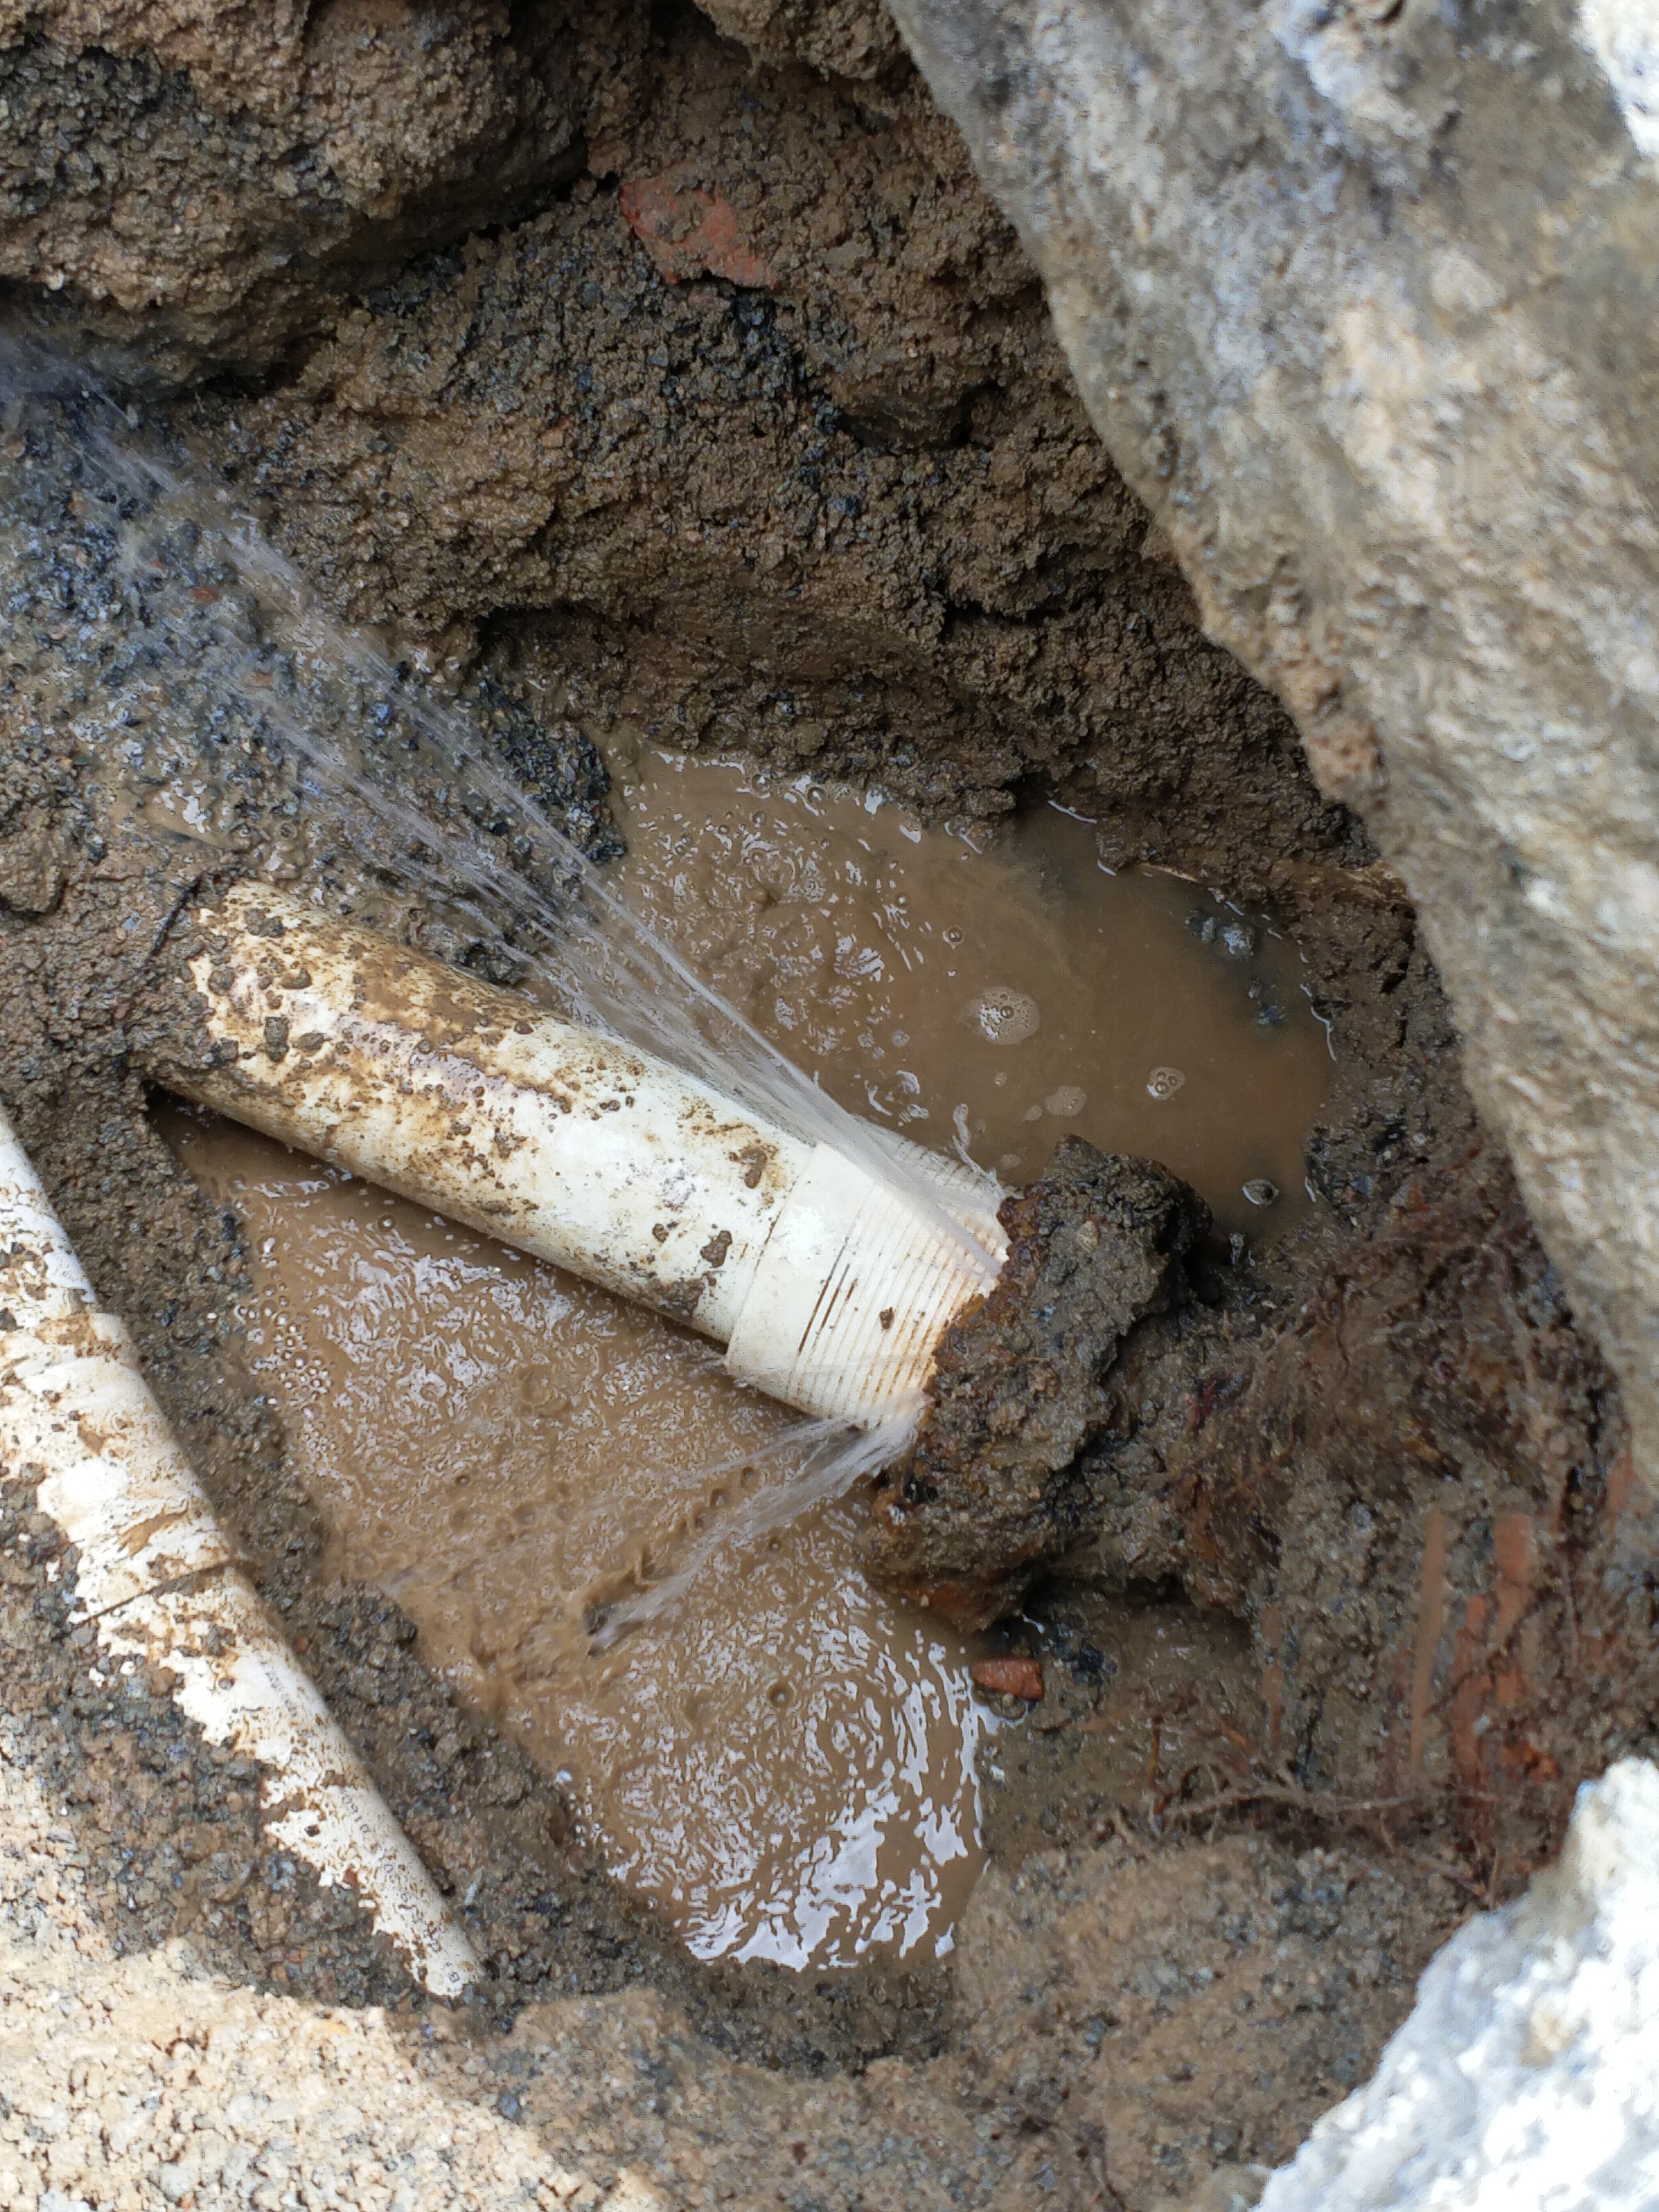 地下管道漏水检测以及管道维修